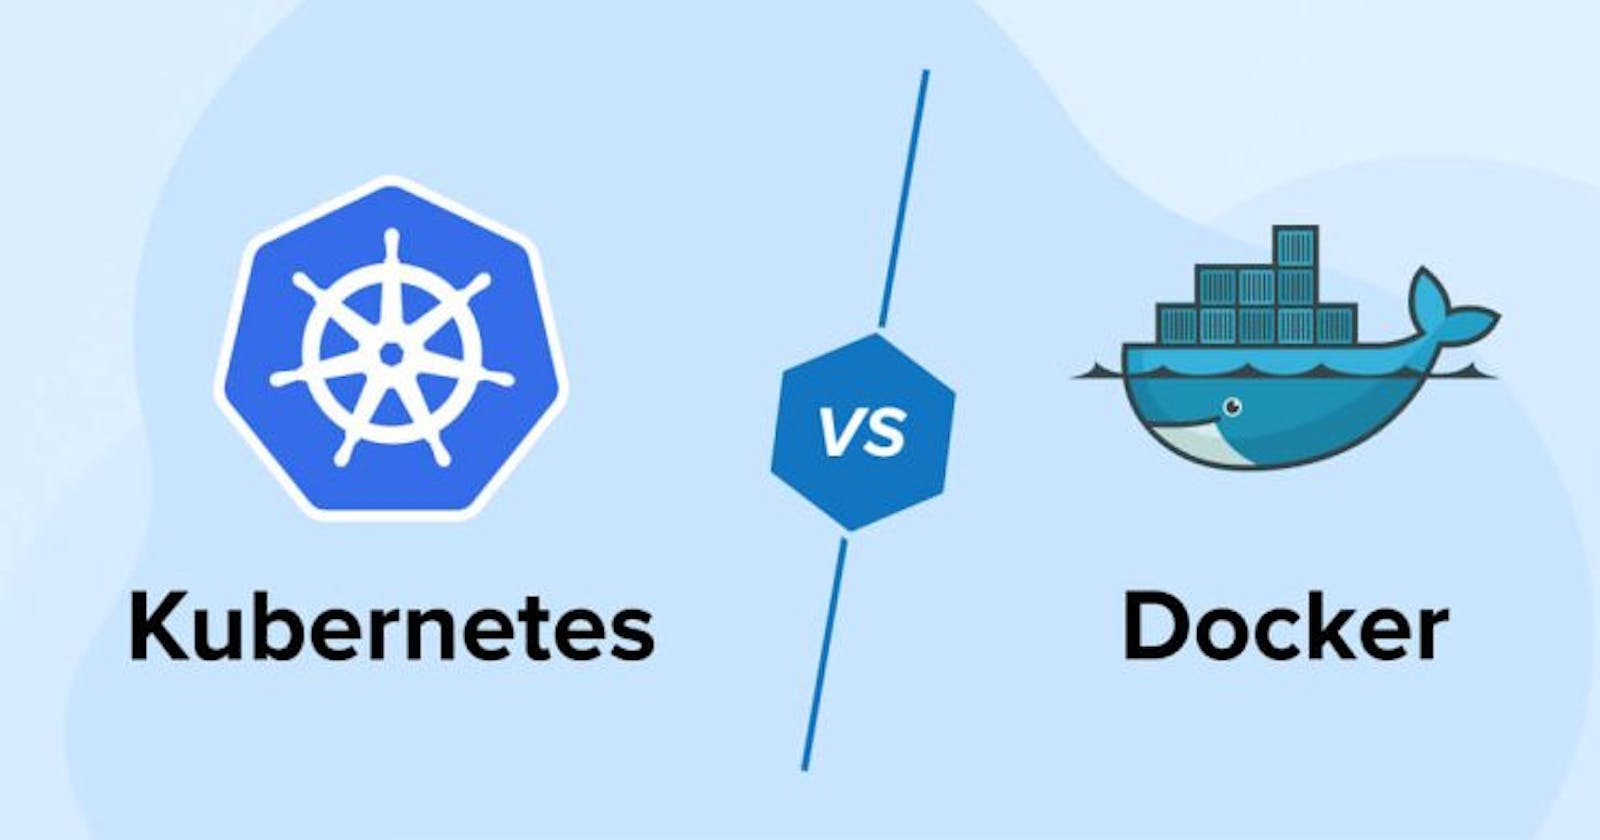 DAY 2: Docker vs Kubernetes